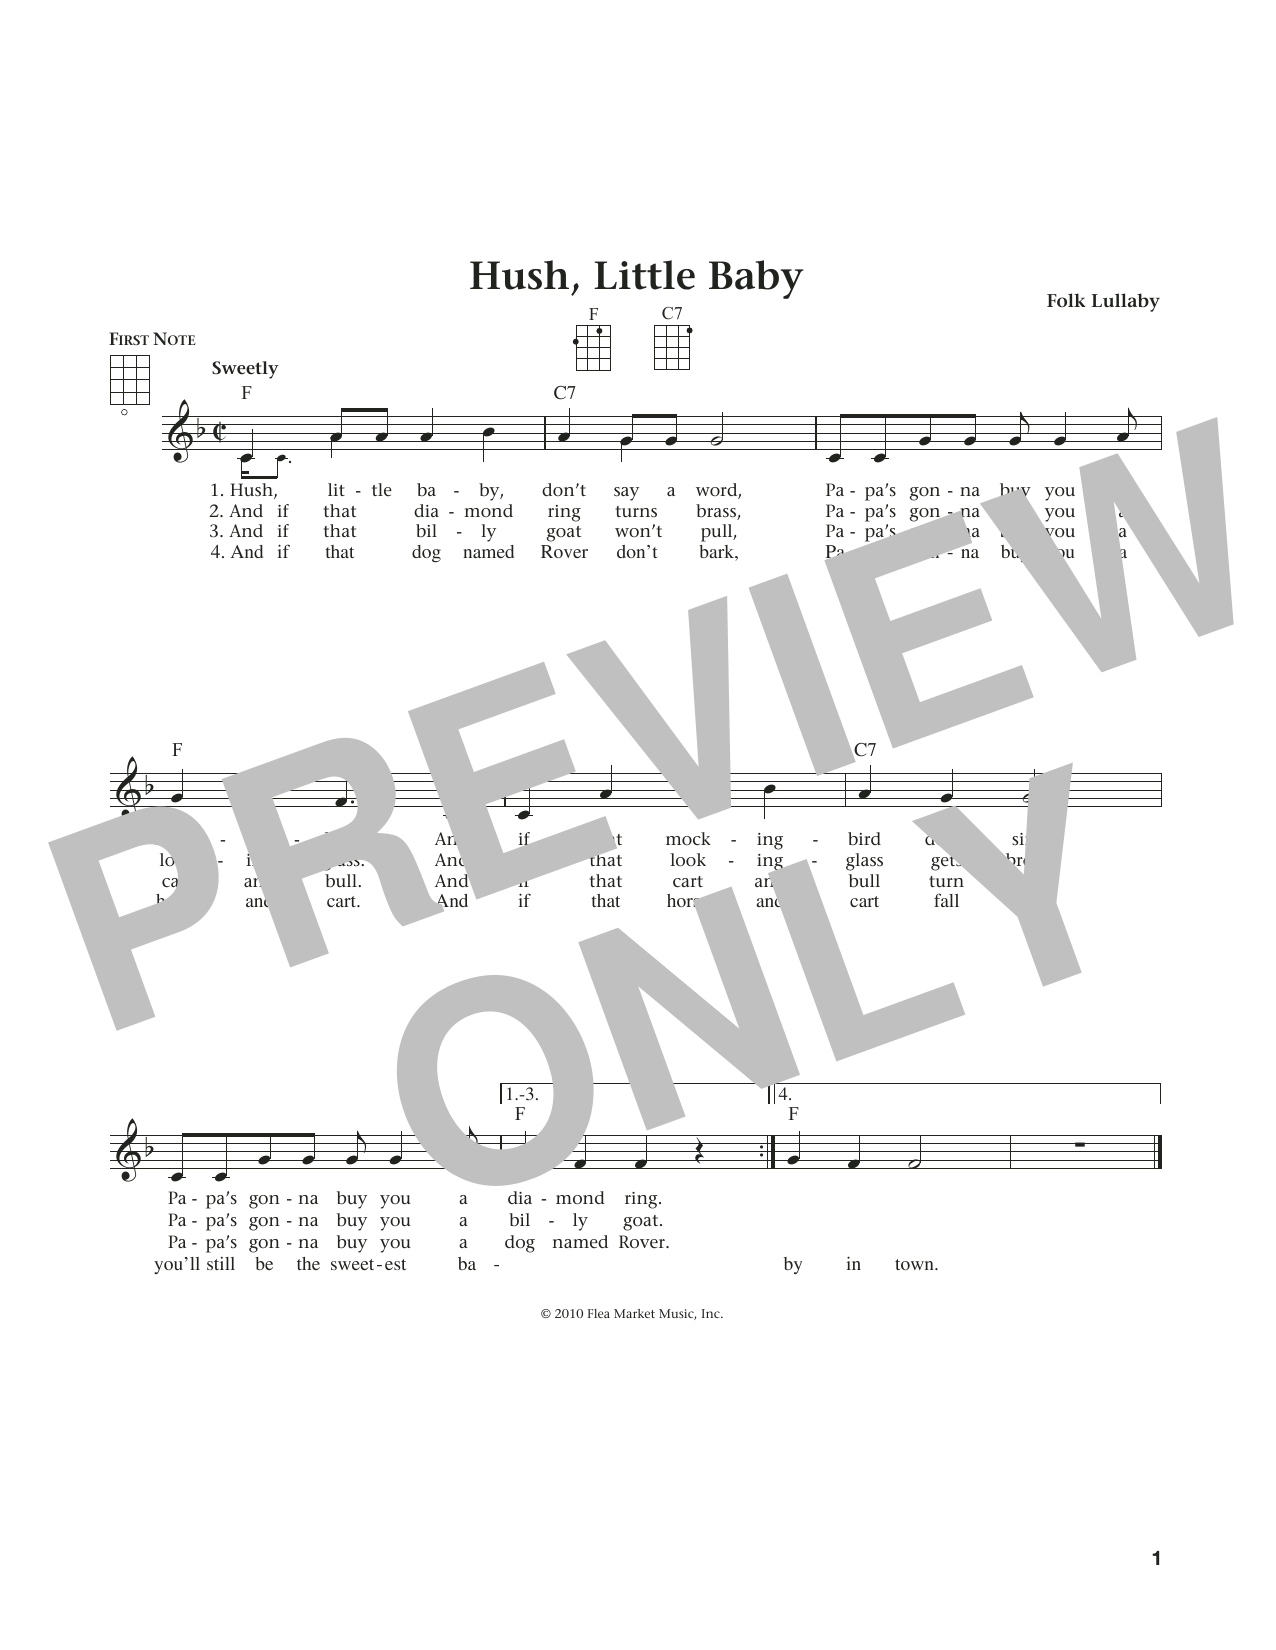 Carolina Folk Lullaby Hush, Little Baby (from The Daily Ukulele) (arr. Liz and Jim Beloff) sheet music notes and chords arranged for Ukulele